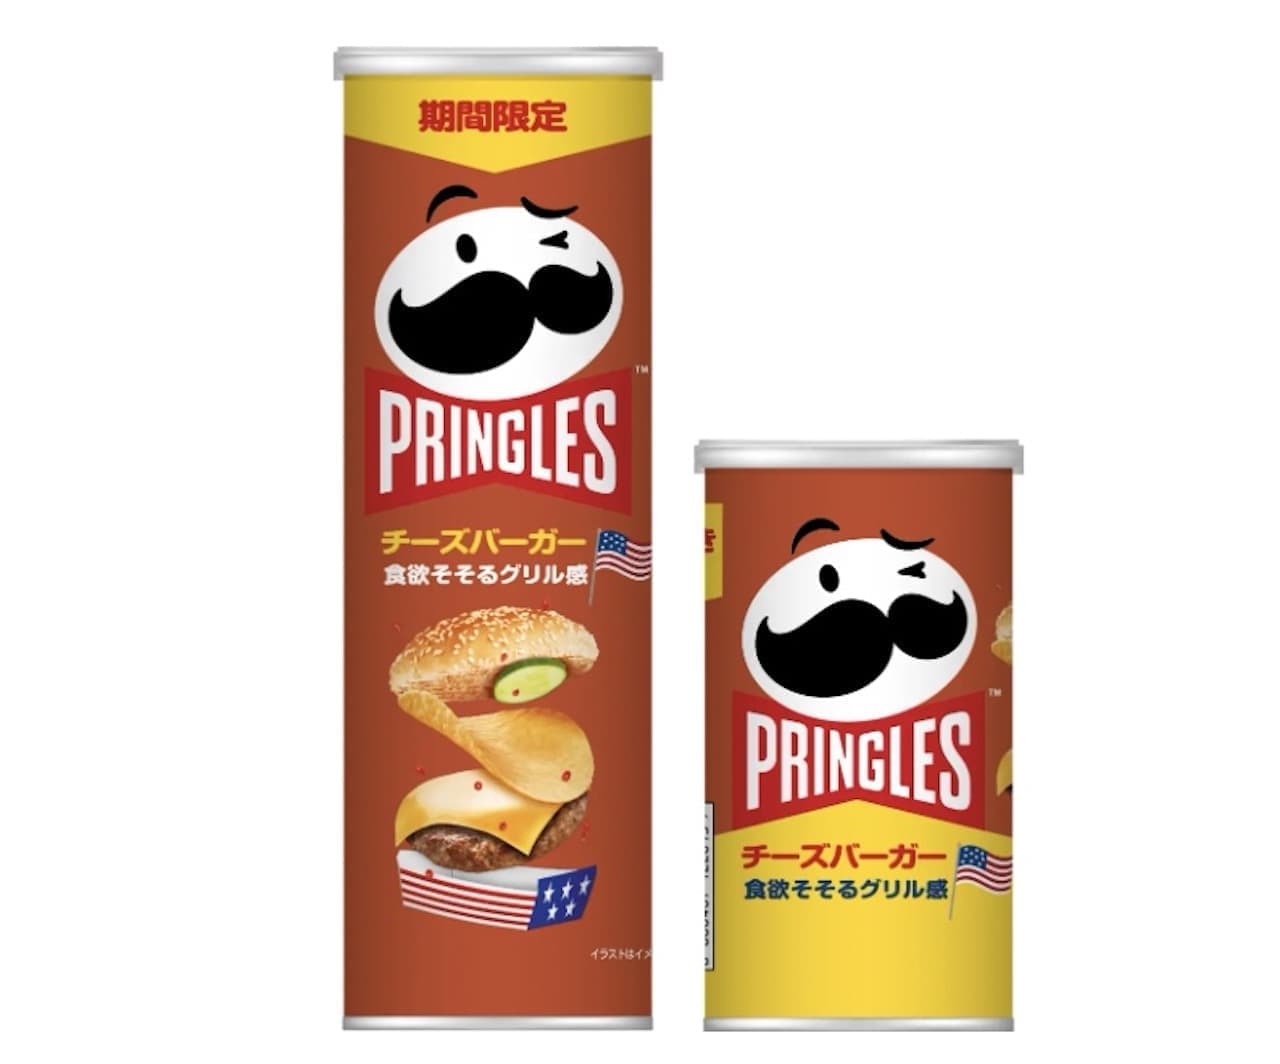 New Pringles Cheeseburger